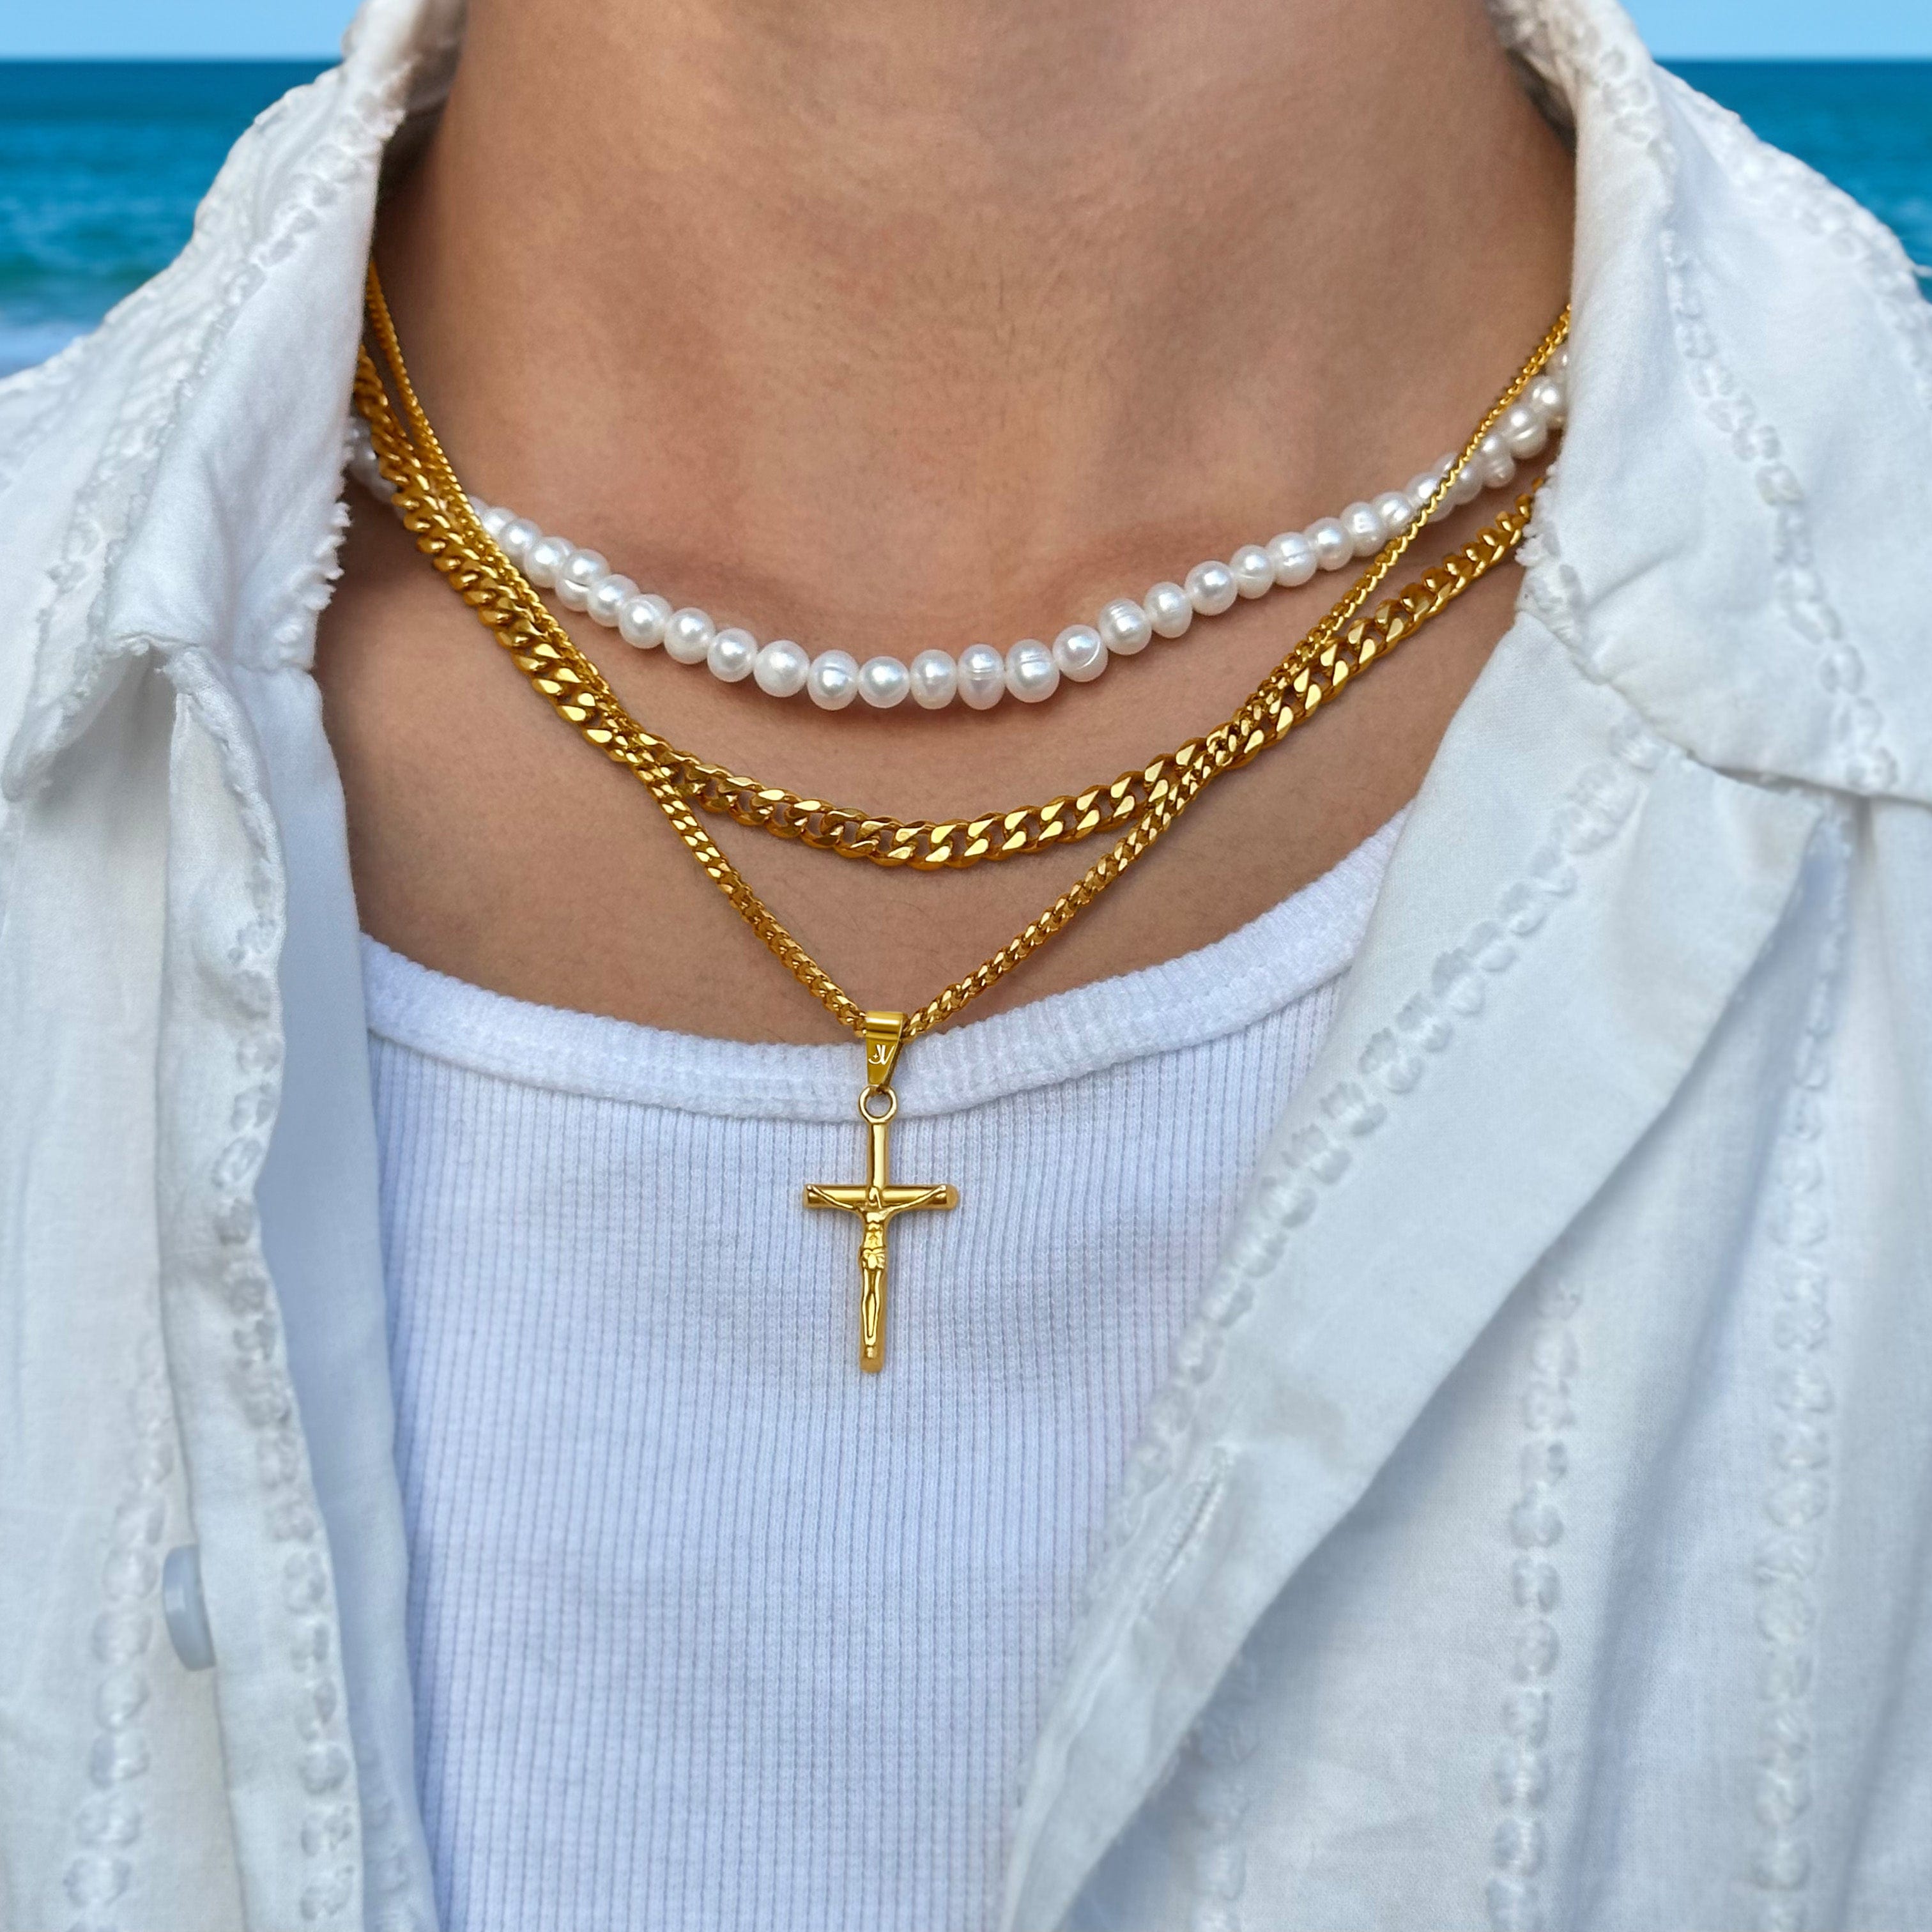 Halskette mit Anhänger Jesus Kreuz Gold 60cm